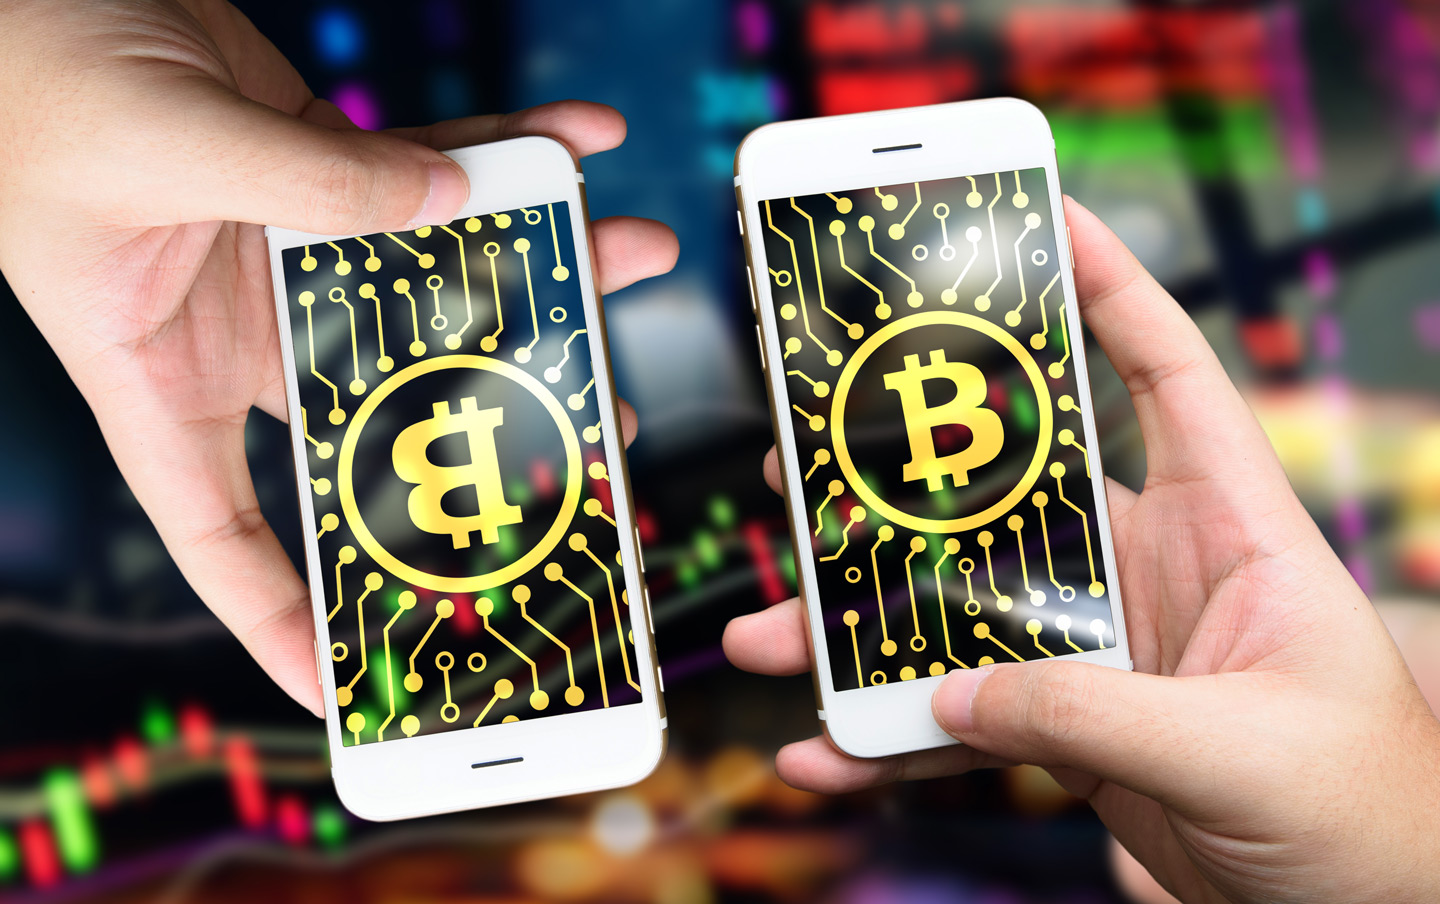 Kryptowährung Bitcoin als Anwendungsfall der Blockchain-Technologie auf dem Handy